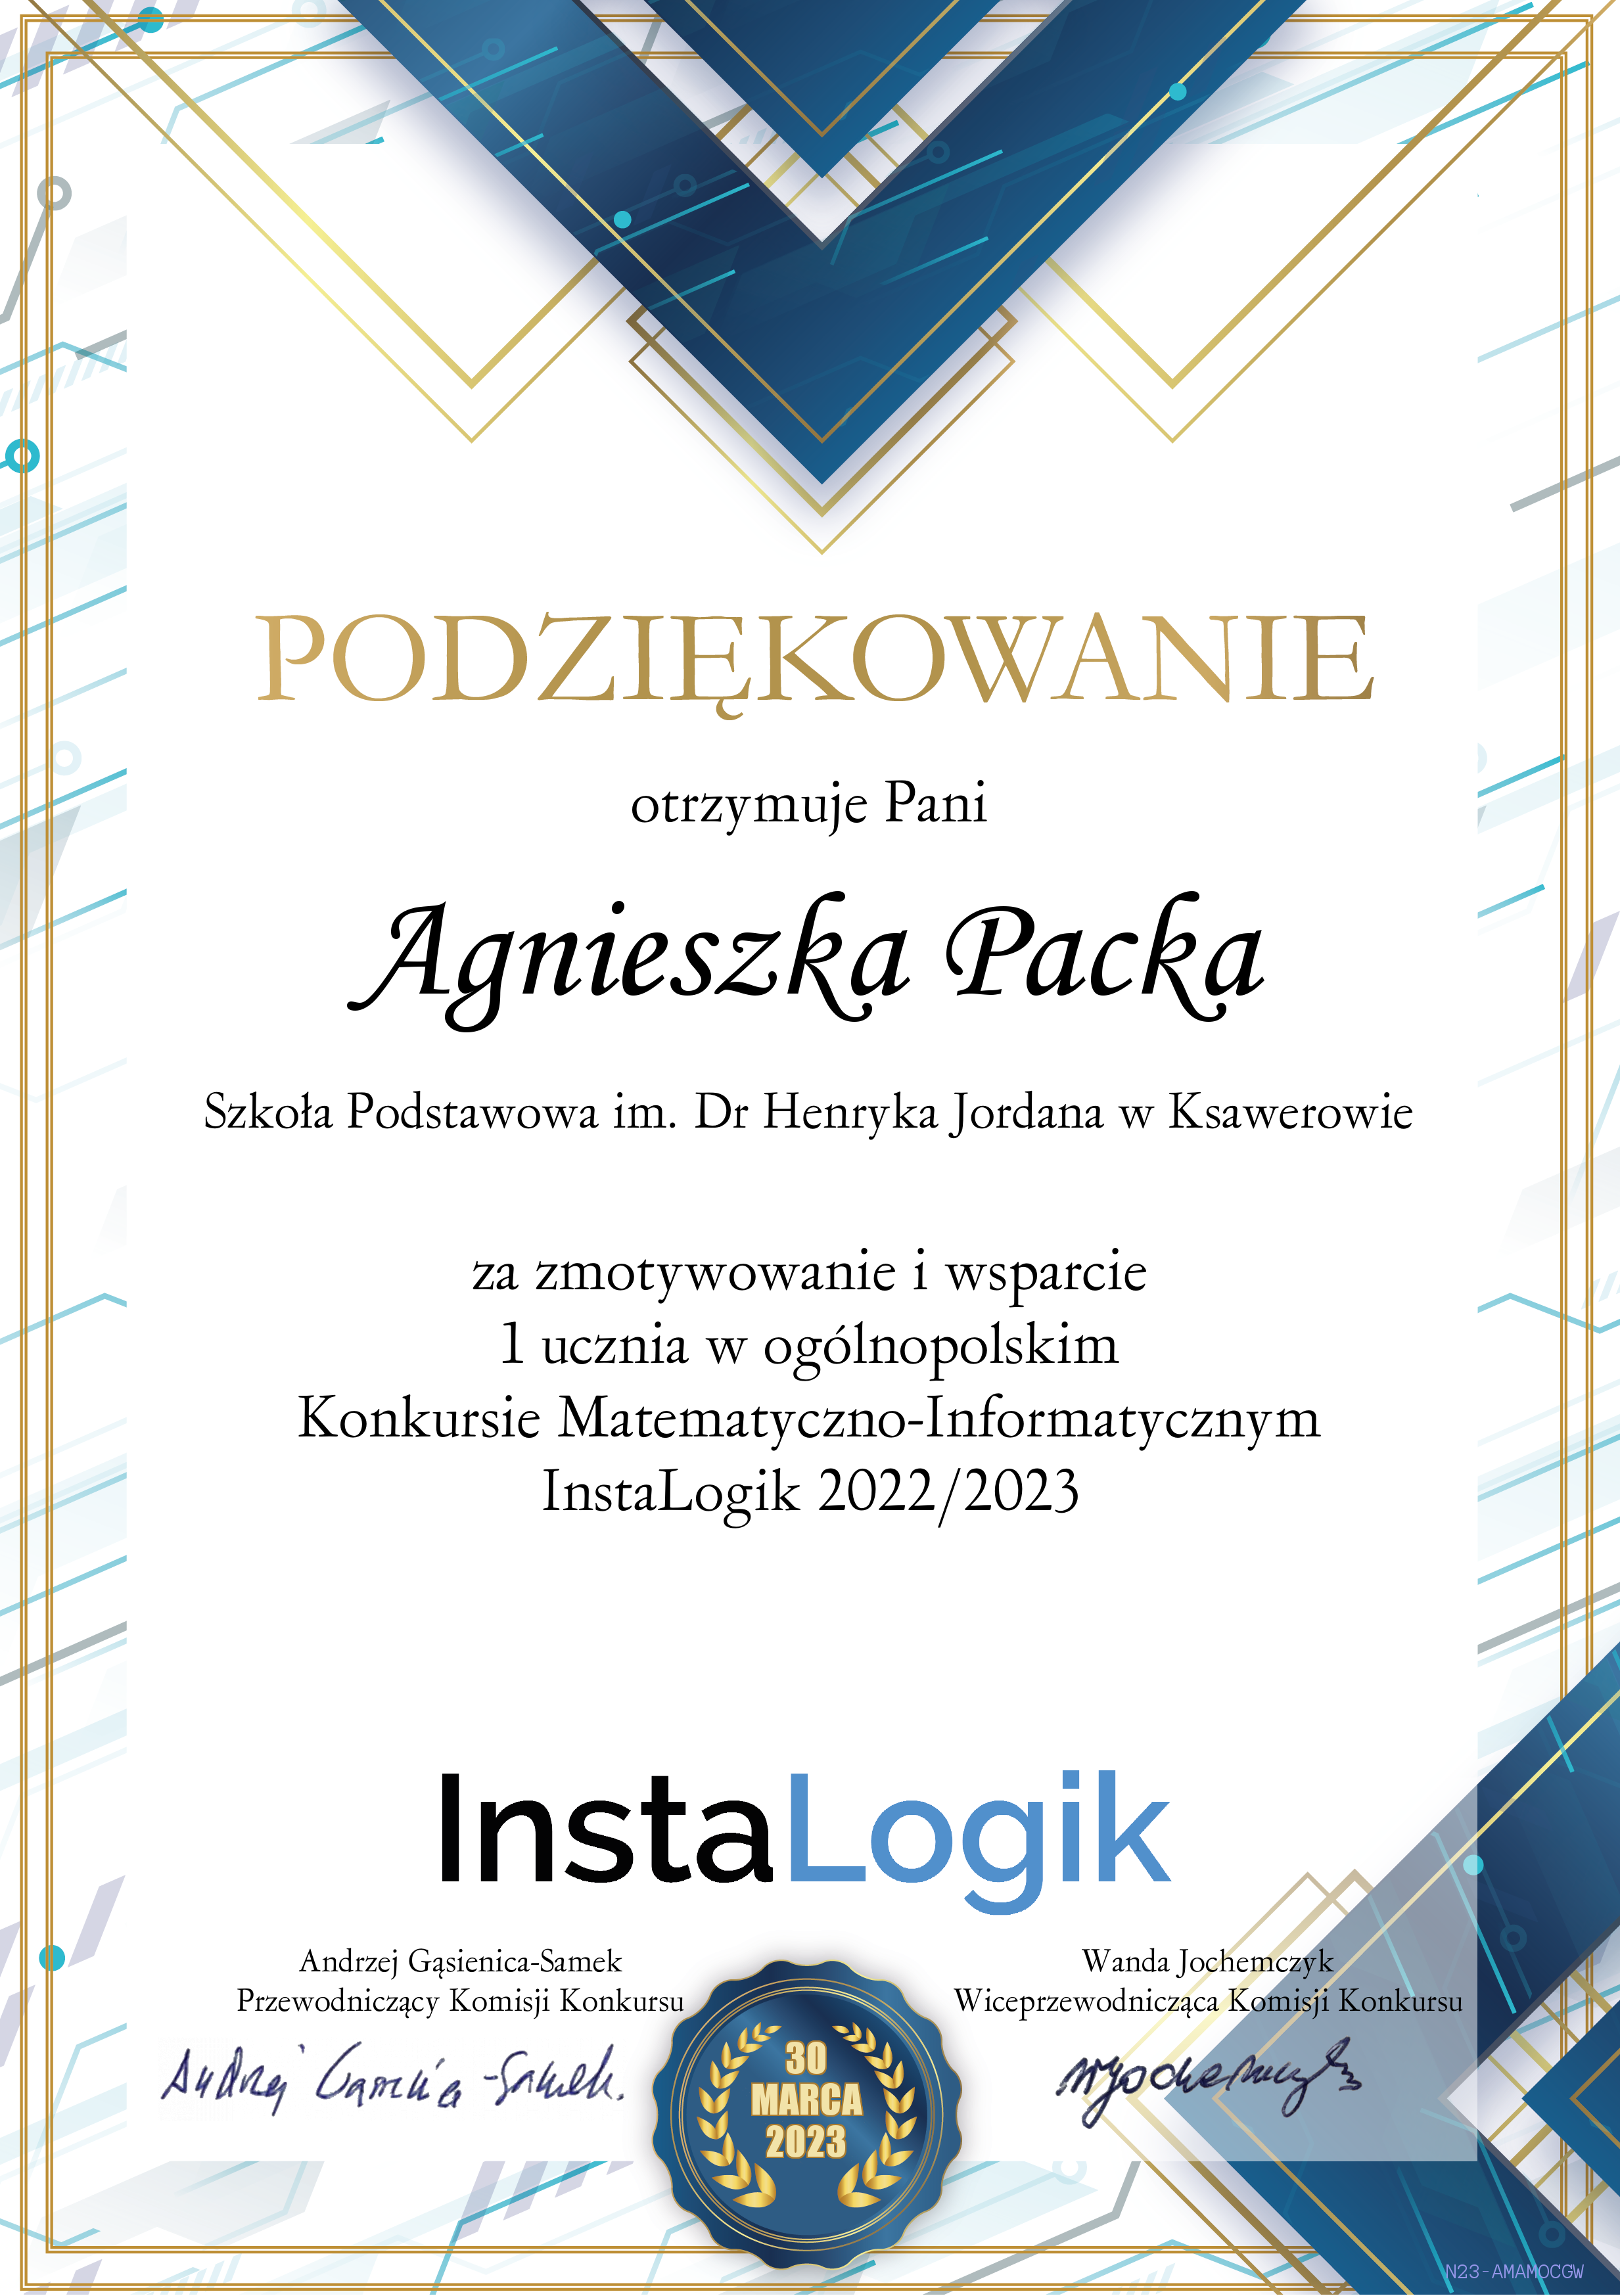 podziekowanie_instalogik_4_Agnieszka_Packa.png